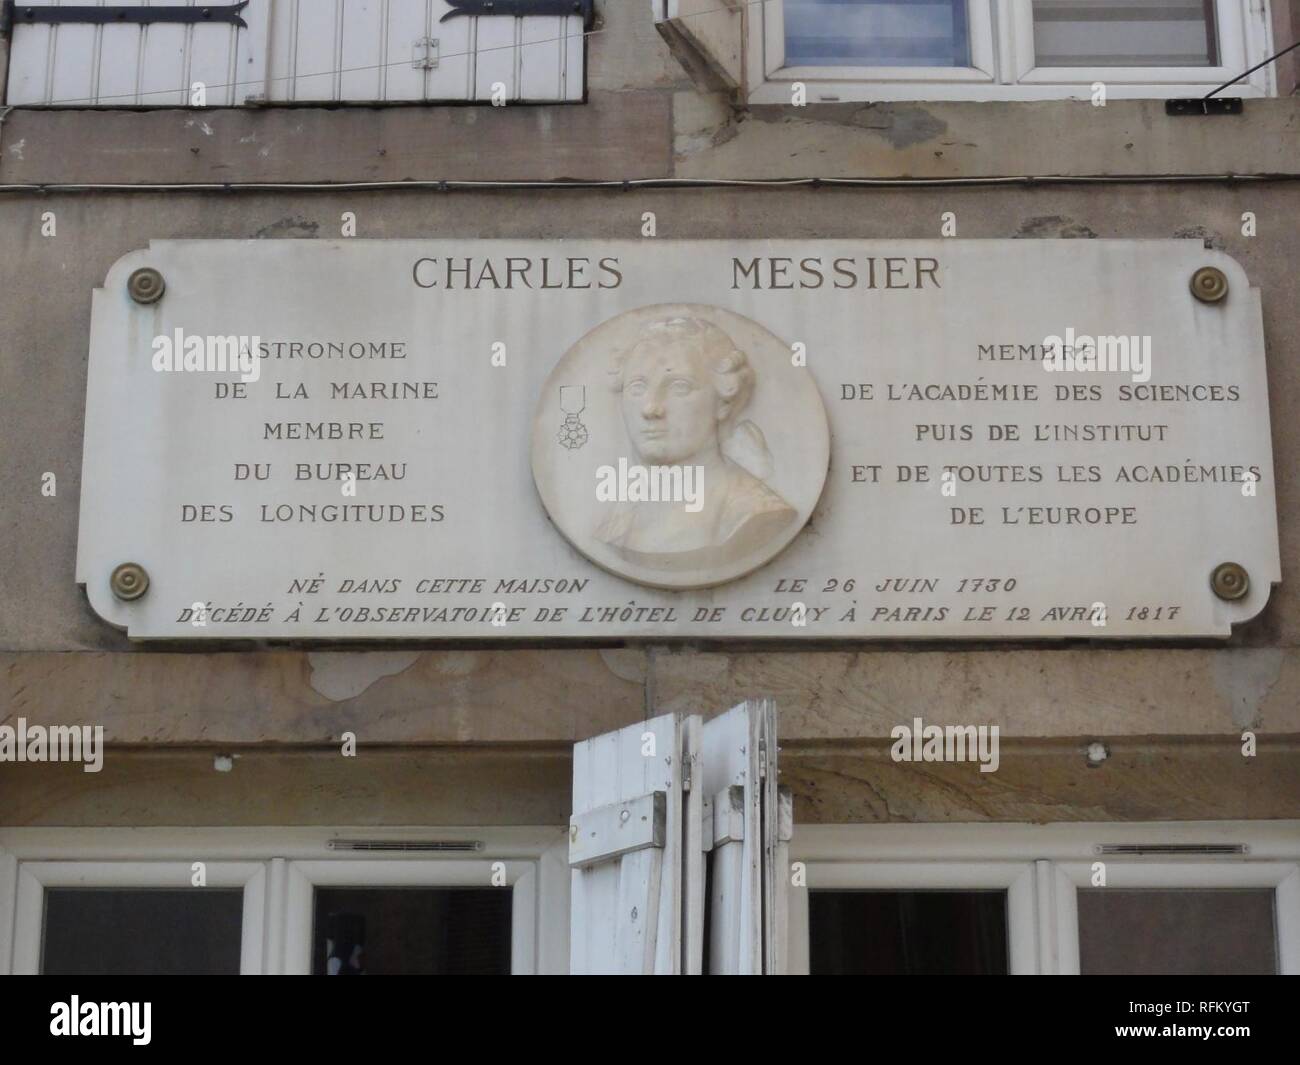 Badonviller (M-et-M) maison Charles Messier, plaque. Stock Photo